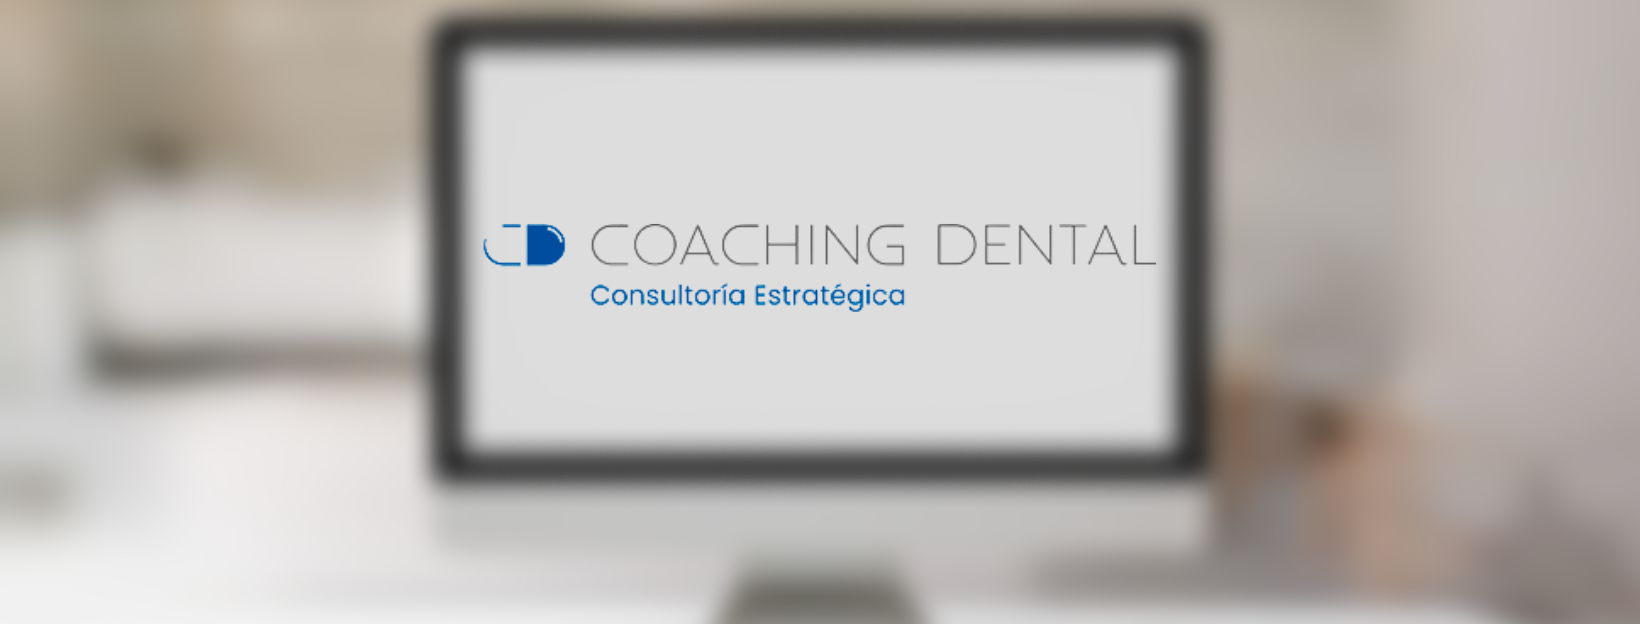 SEO para Coaching Dental